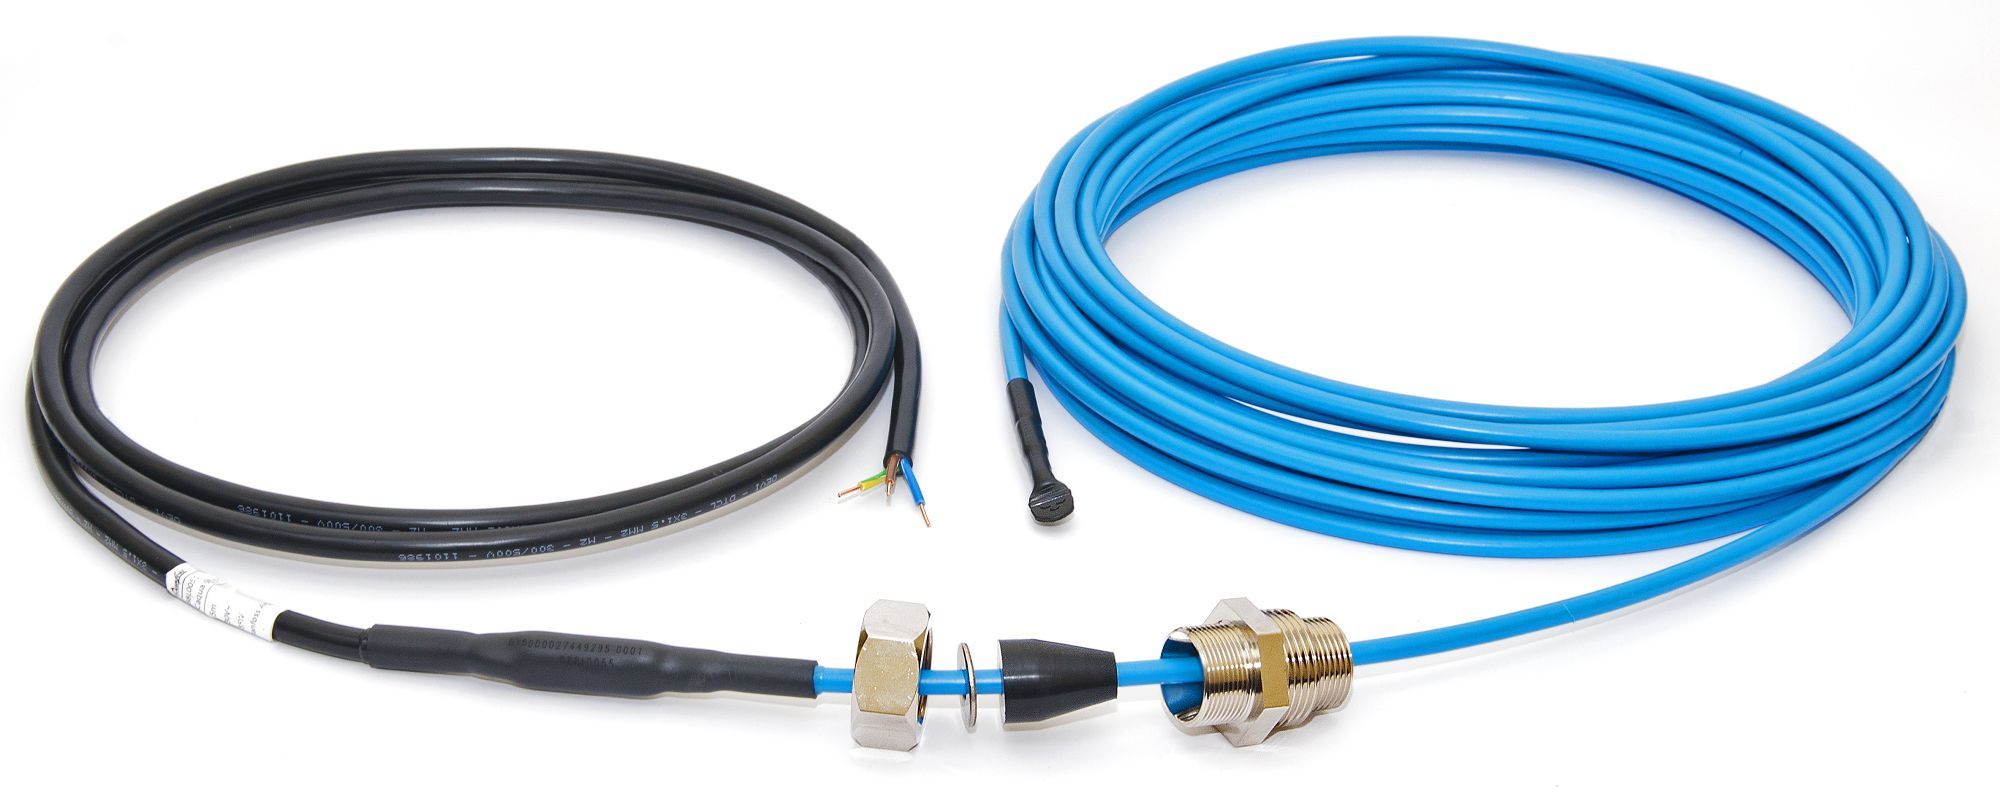 Купить кабель для обогрева труб. Кабель Devi DTIV-9 10м. Греющий кабель для водопровода ПНД 32. Кабель для обогрева труб внутри Devi DTIV-9 360 Вт 40 м. Греющий кабель для водопровода на 32 трубу.